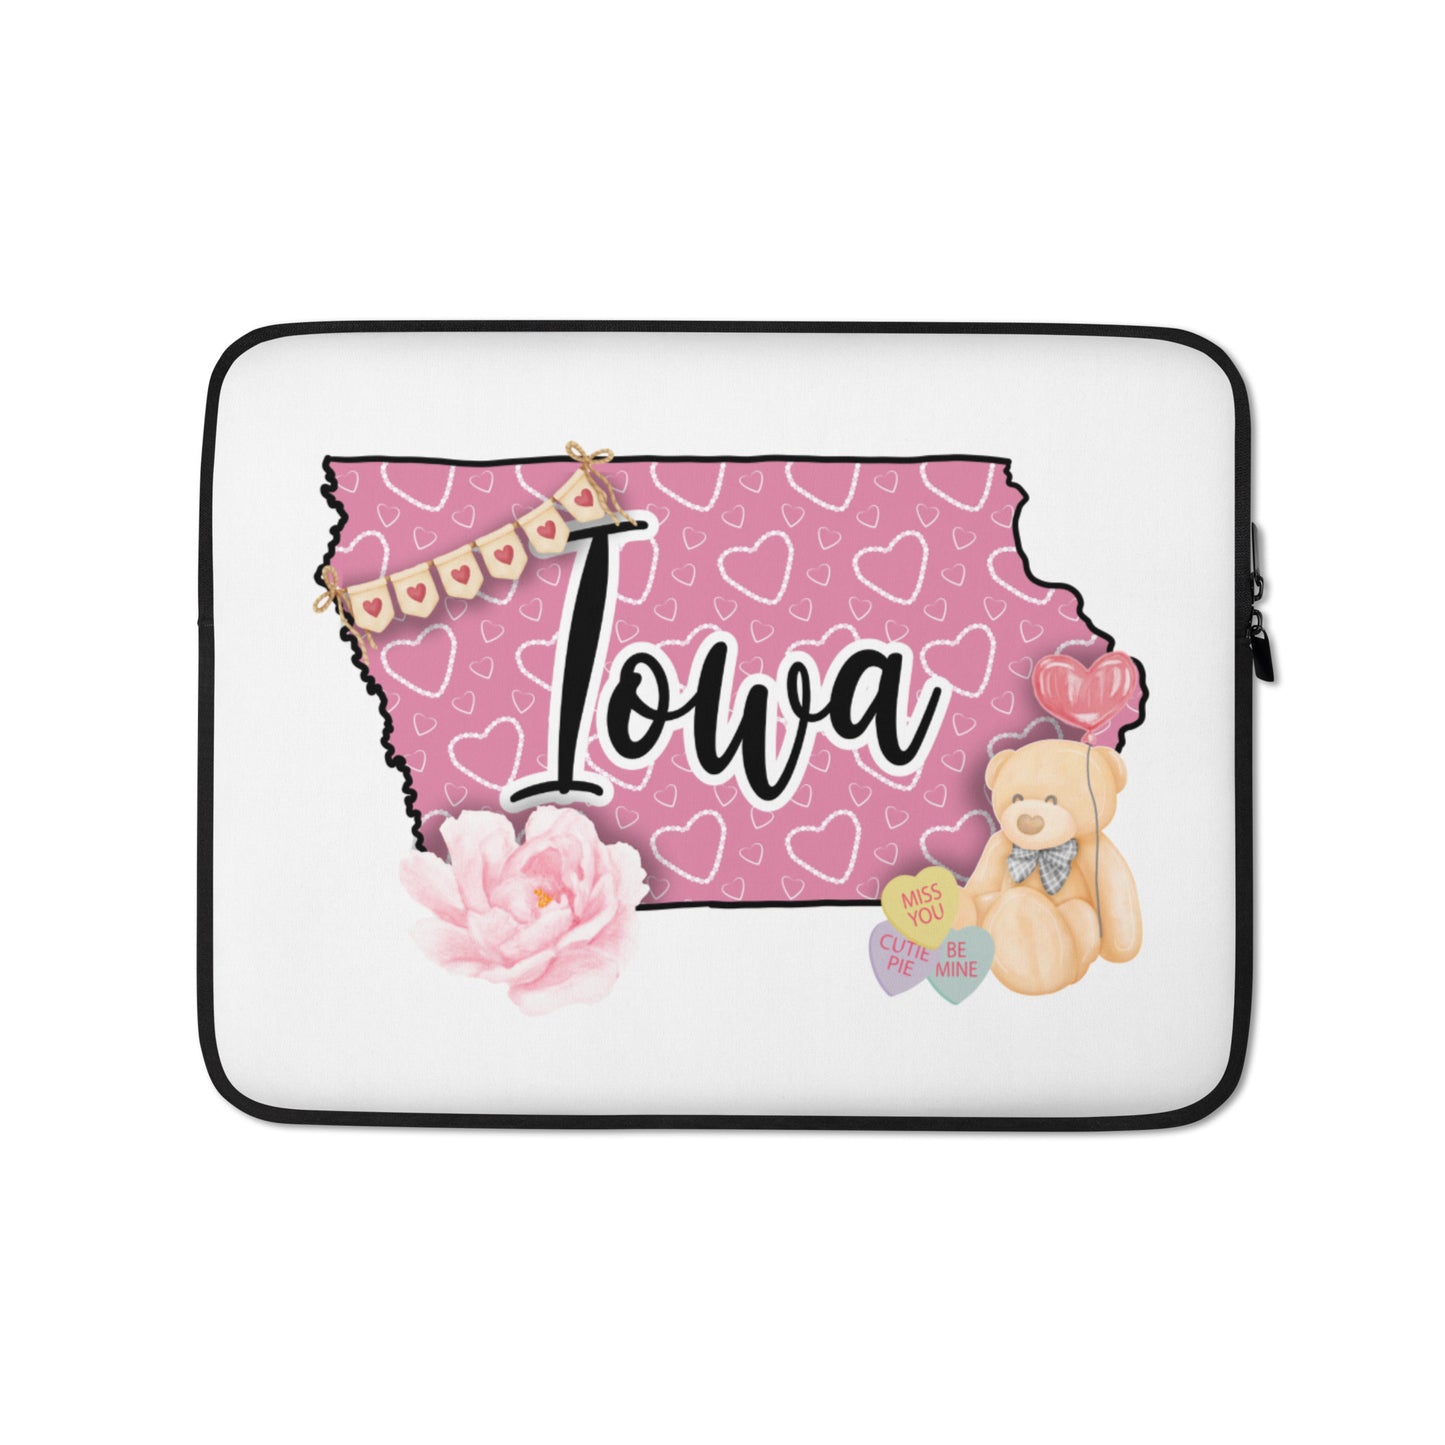 Iowa Laptop Sleeve